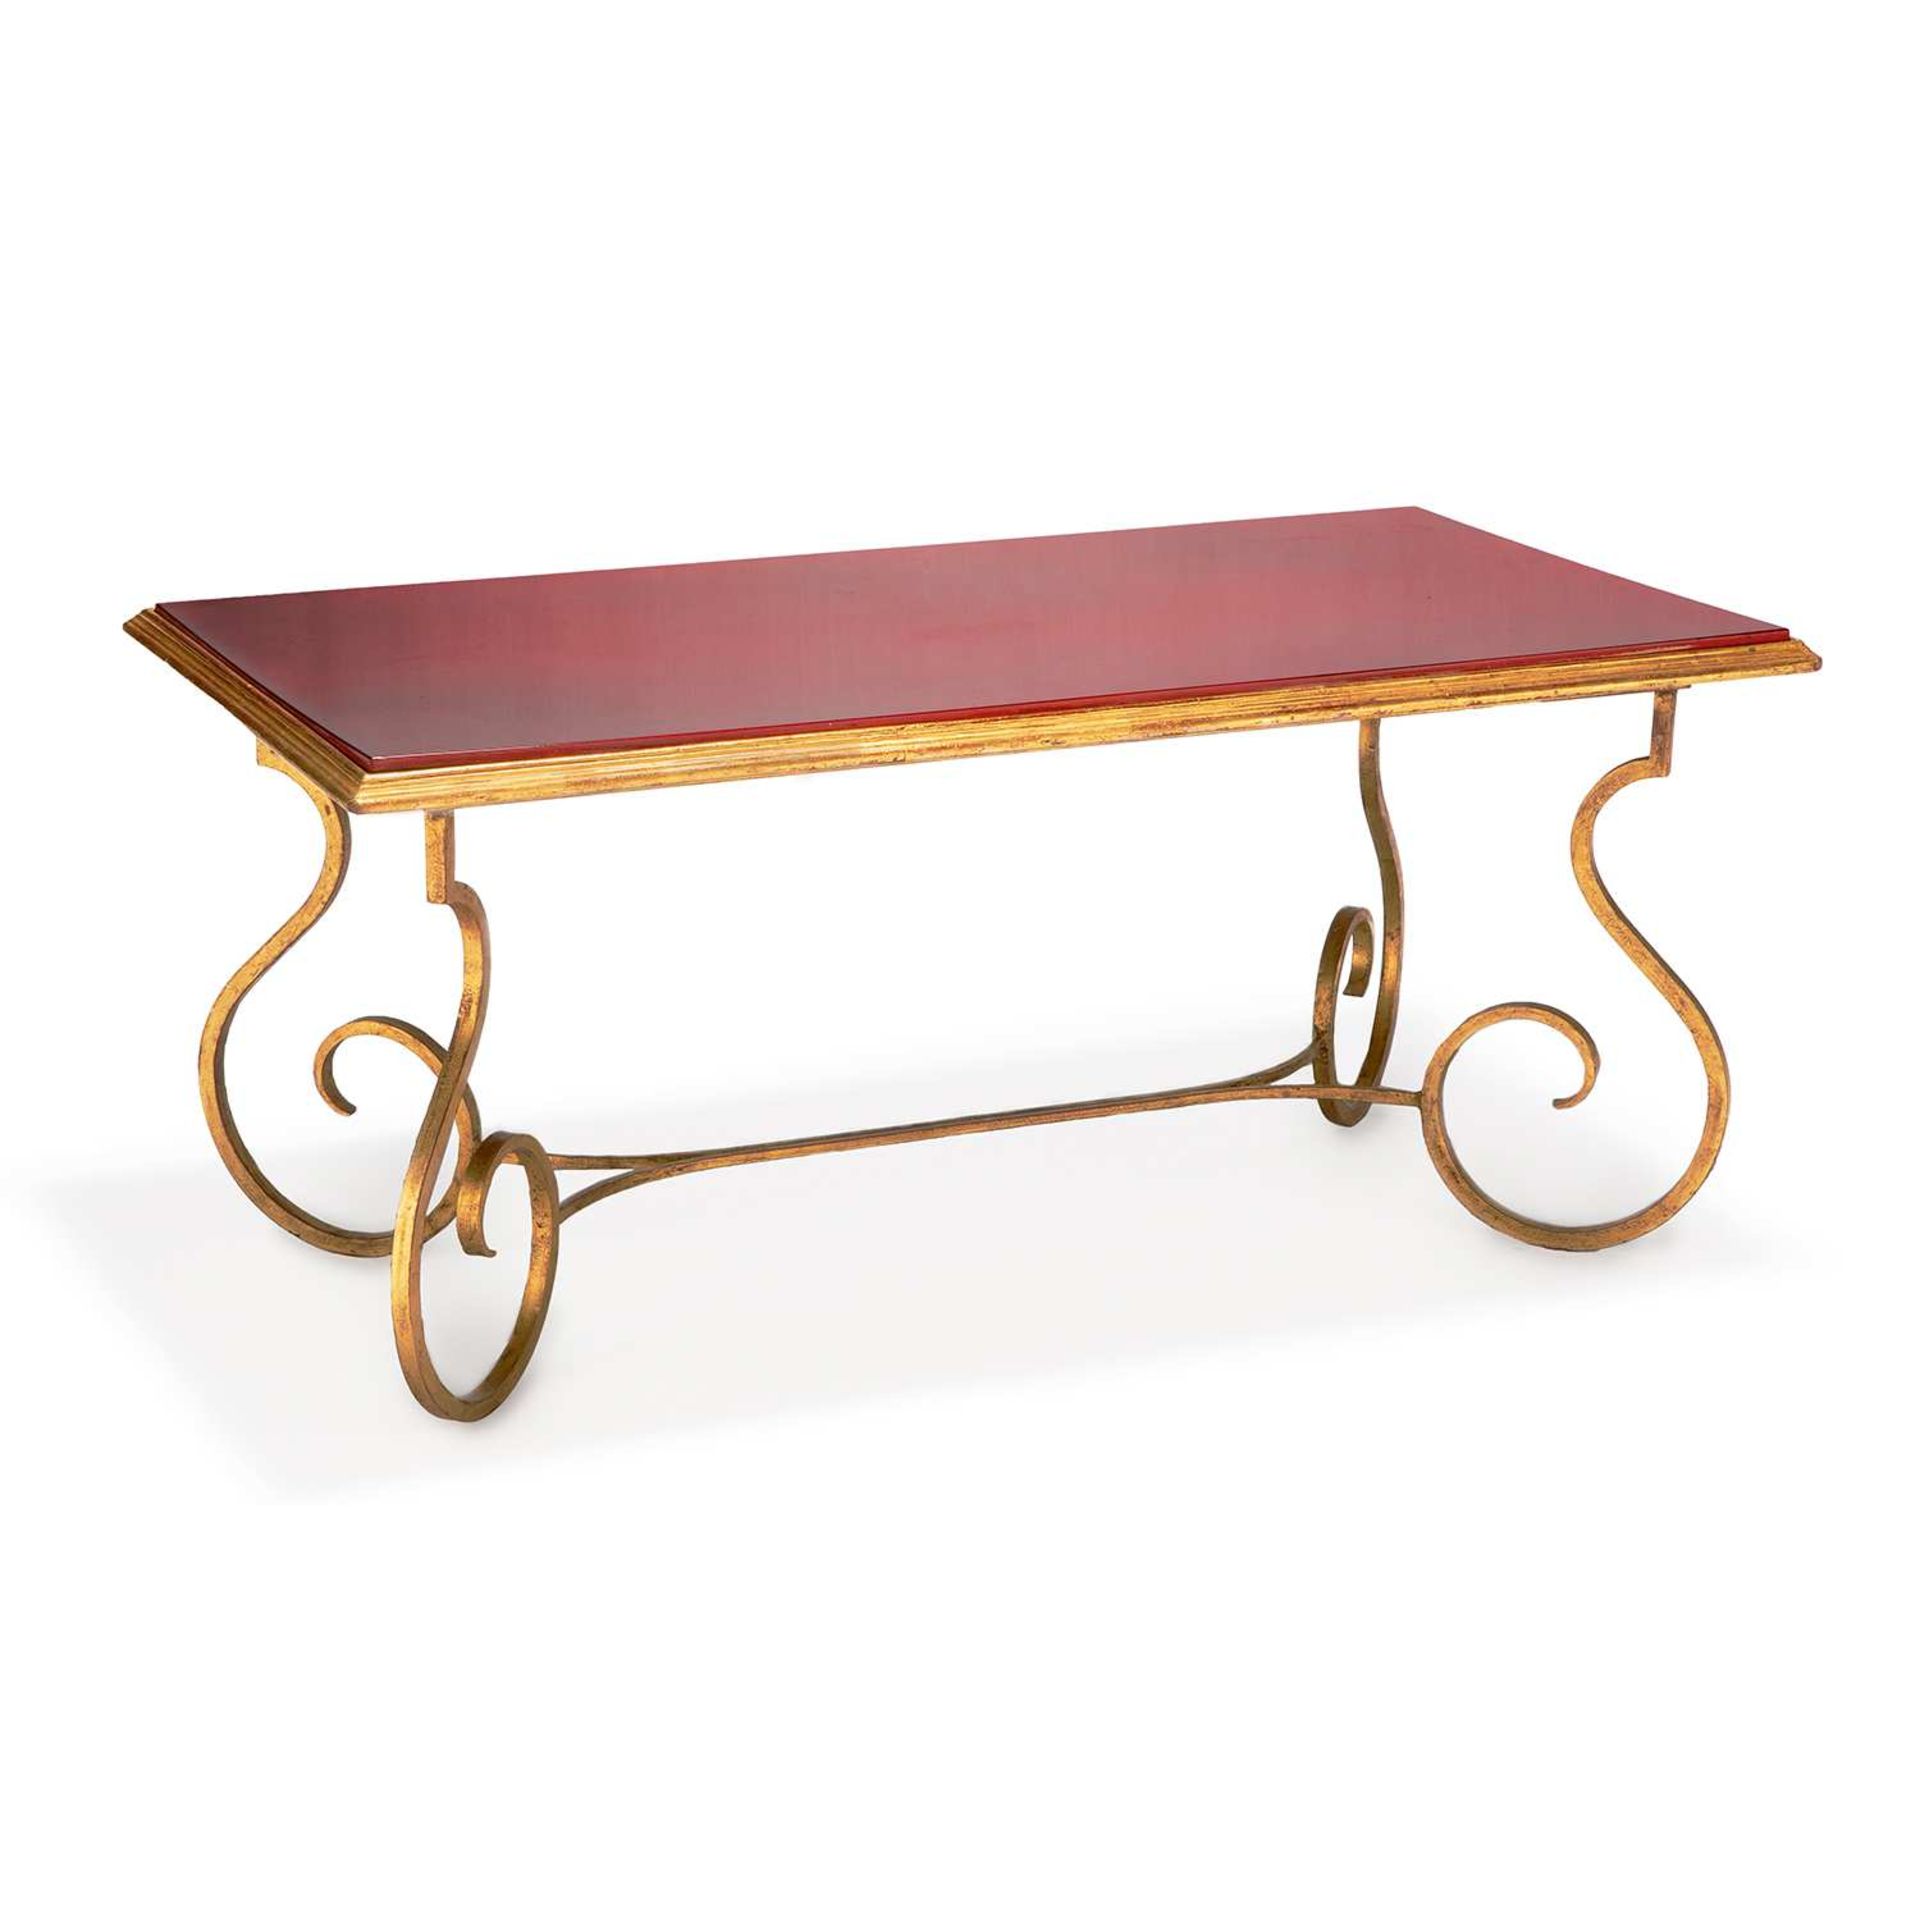 JEAN PASCAUD (1903-1996) Table basse néoclassique, piétement en fer forgé doré formant volutes,